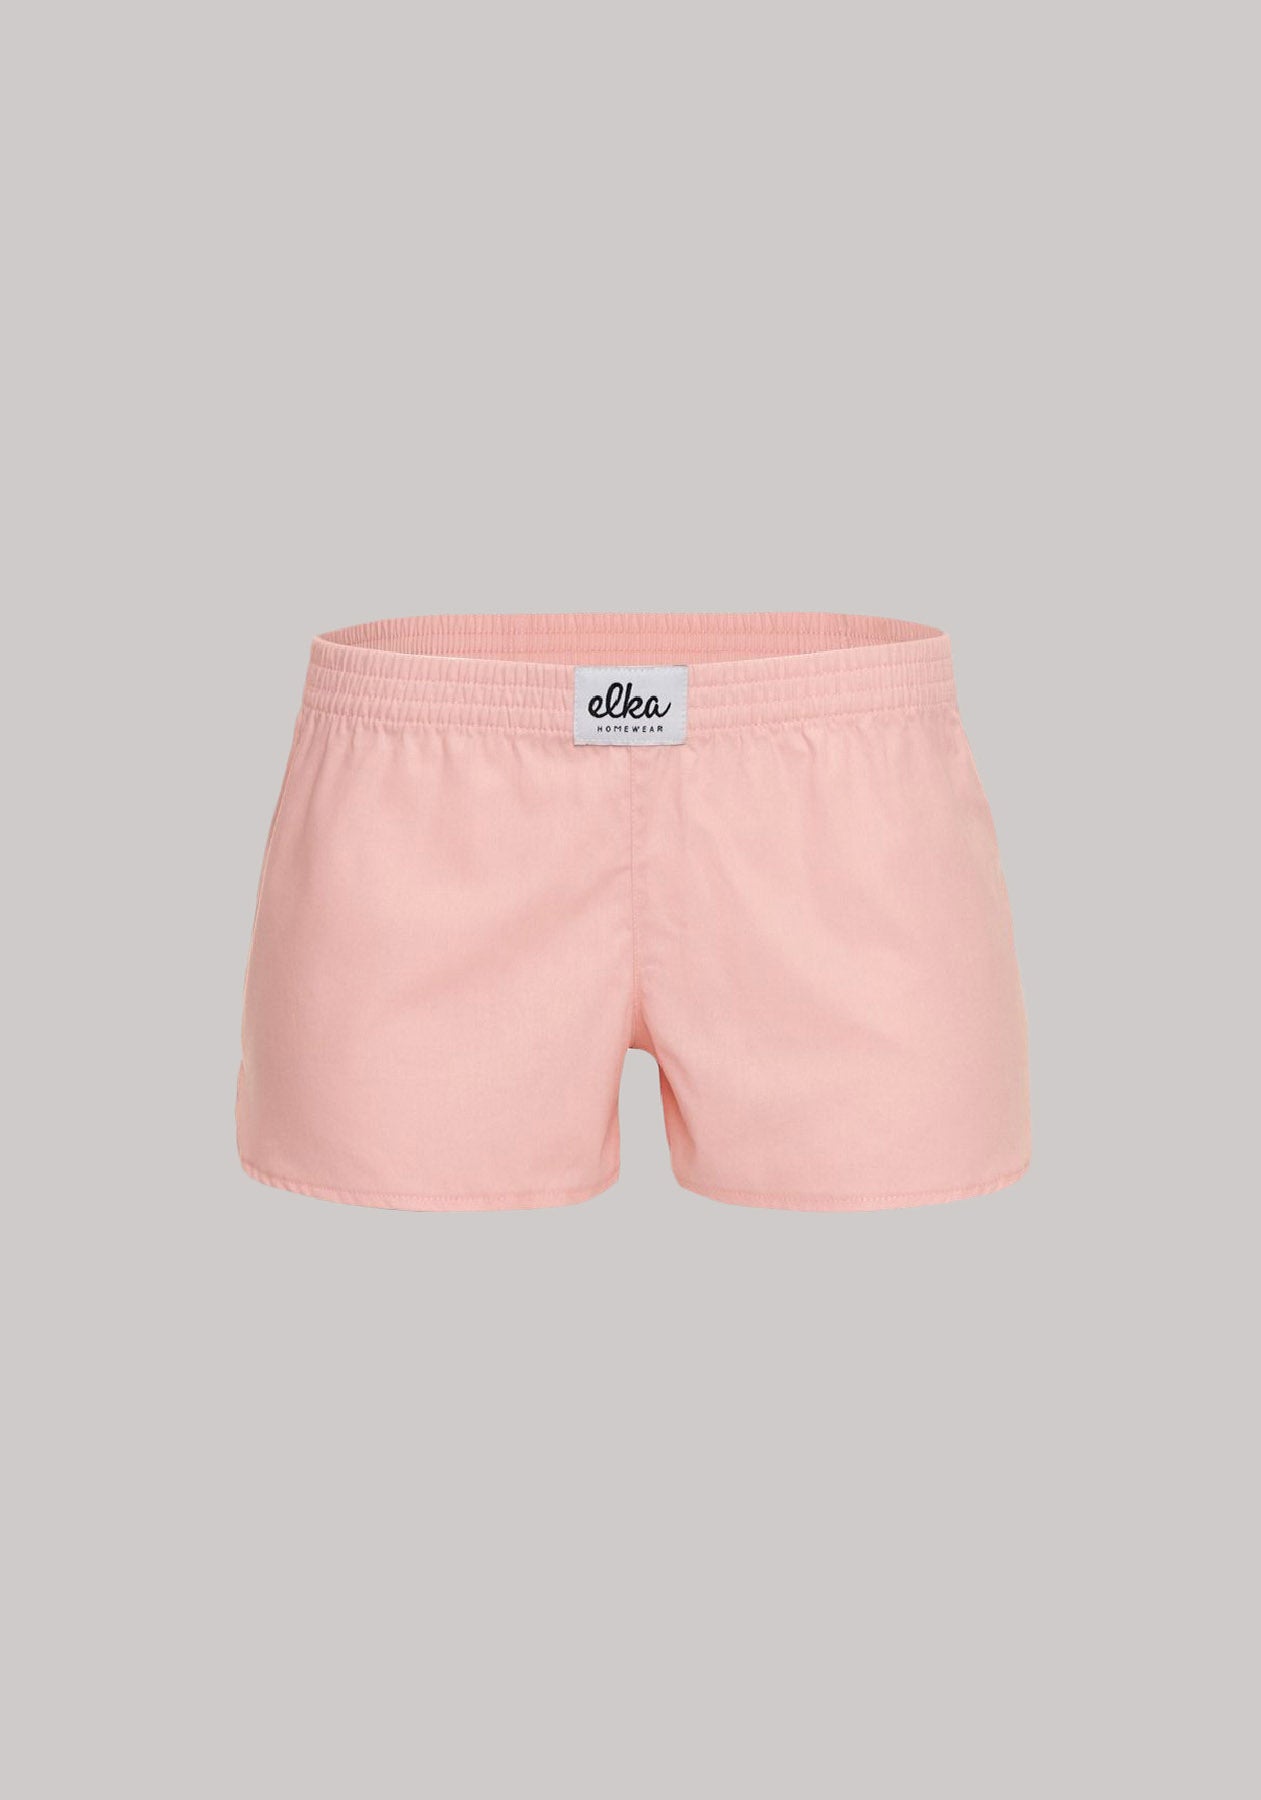 Women's shorts Light pink